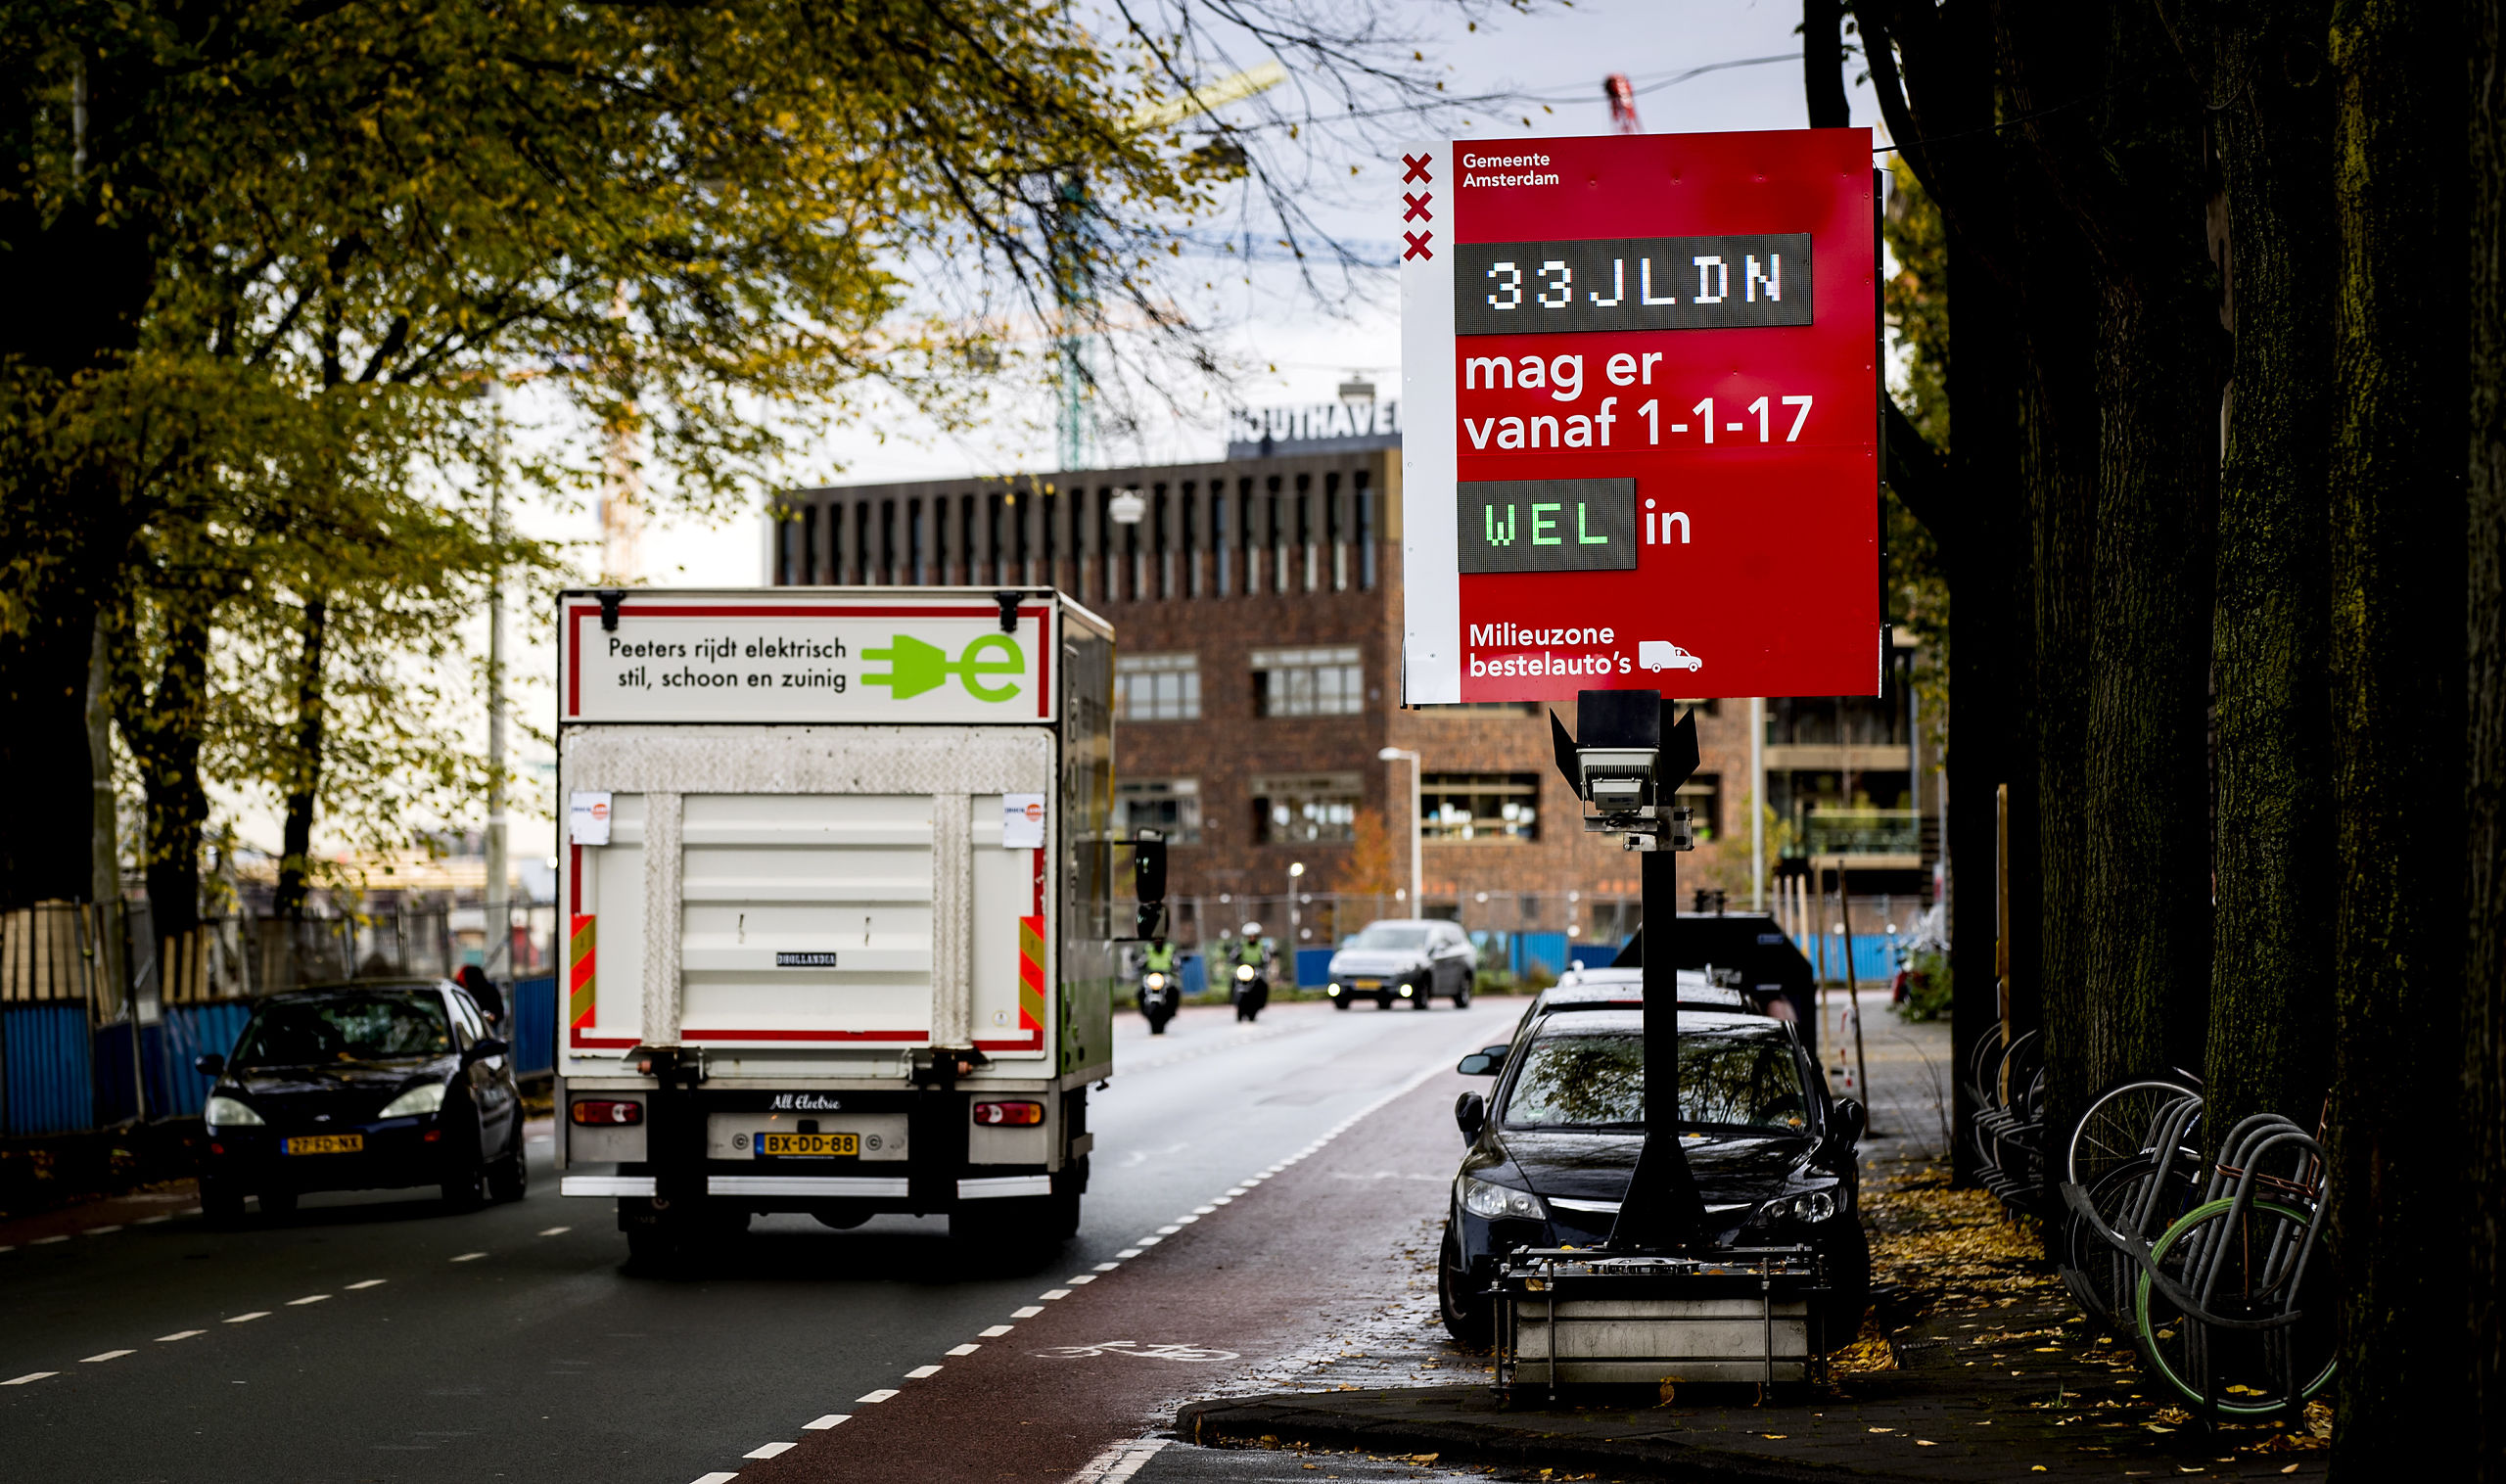 2016-11-03 13:51:43 AMSTERDAM - De gemeente Amsterdam heeft kentekencheckers geplaatst. Eigenaren van bestelauto's kunnen zo controleren of hun voertuig vanaf 1 januari 2017 nog welkom is in de Amsterdamse milieuzone. ANP KOEN VAN WEEL